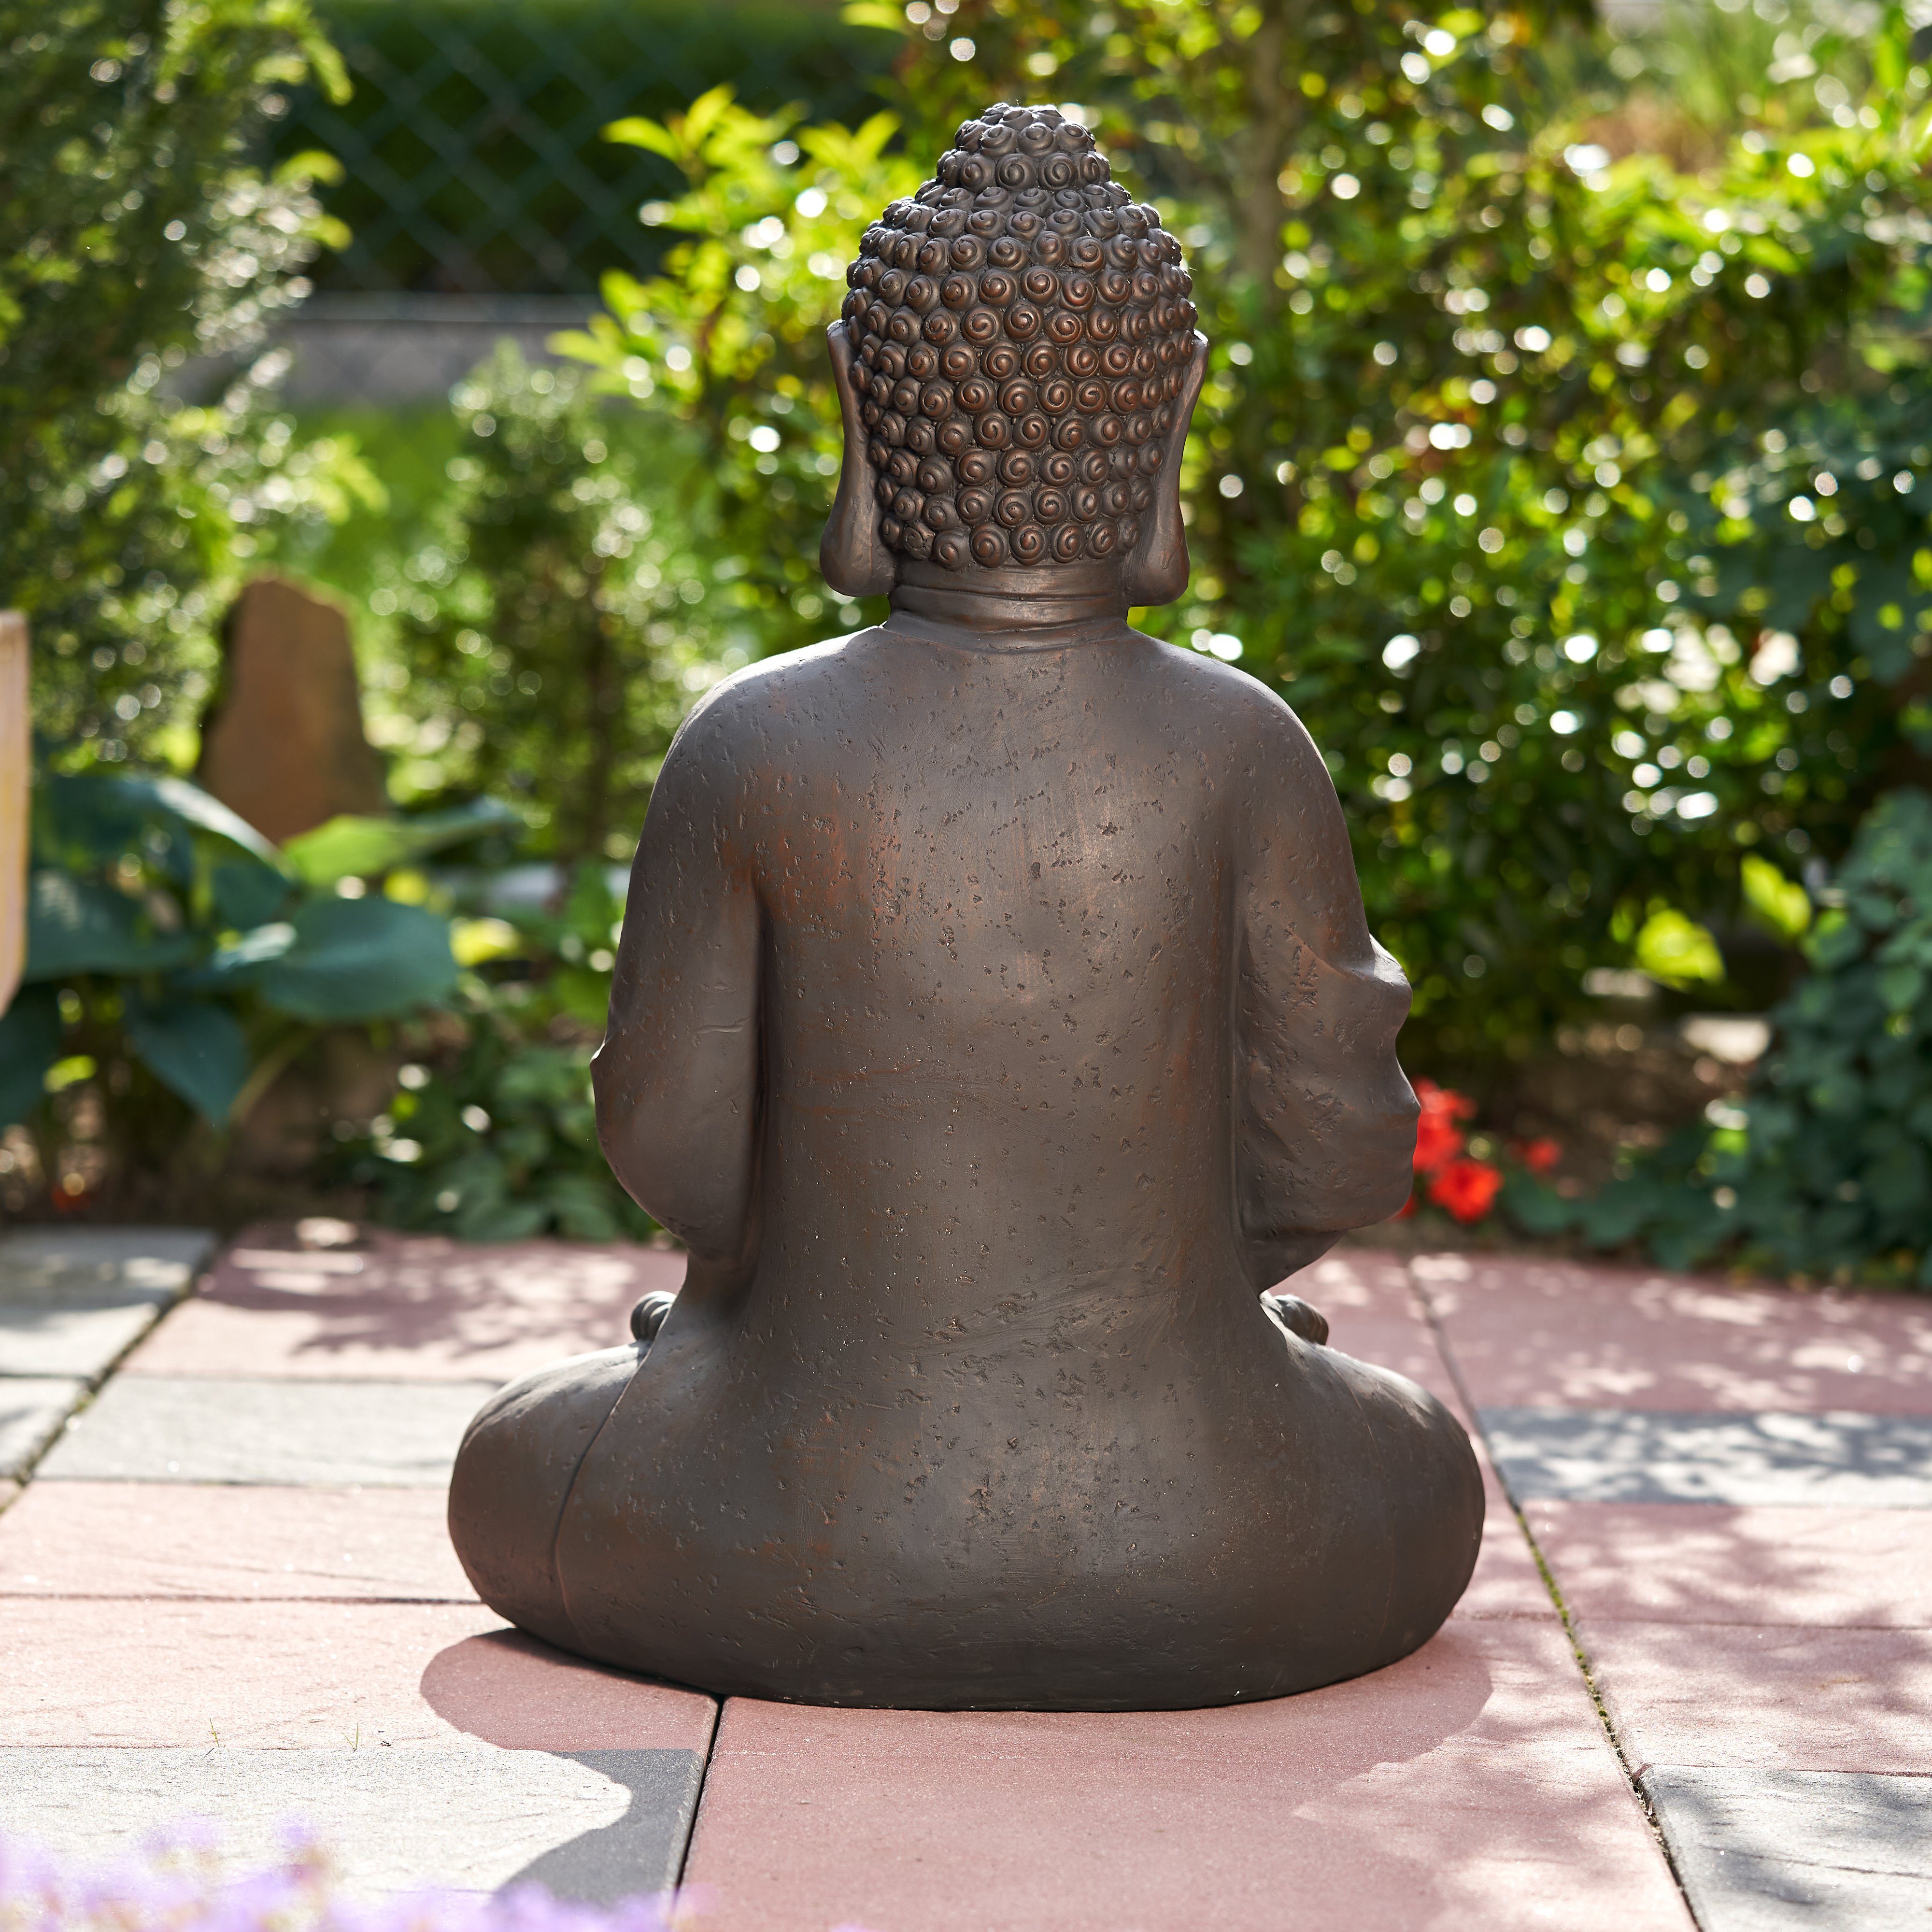 NEUSTEIN Buddhafigur XXXL Deko Garten sitzend Steinoptik cm Shui dunkelbraun Skulptur Steinfigur-Optik Großer 70 Figur Buddha Feng